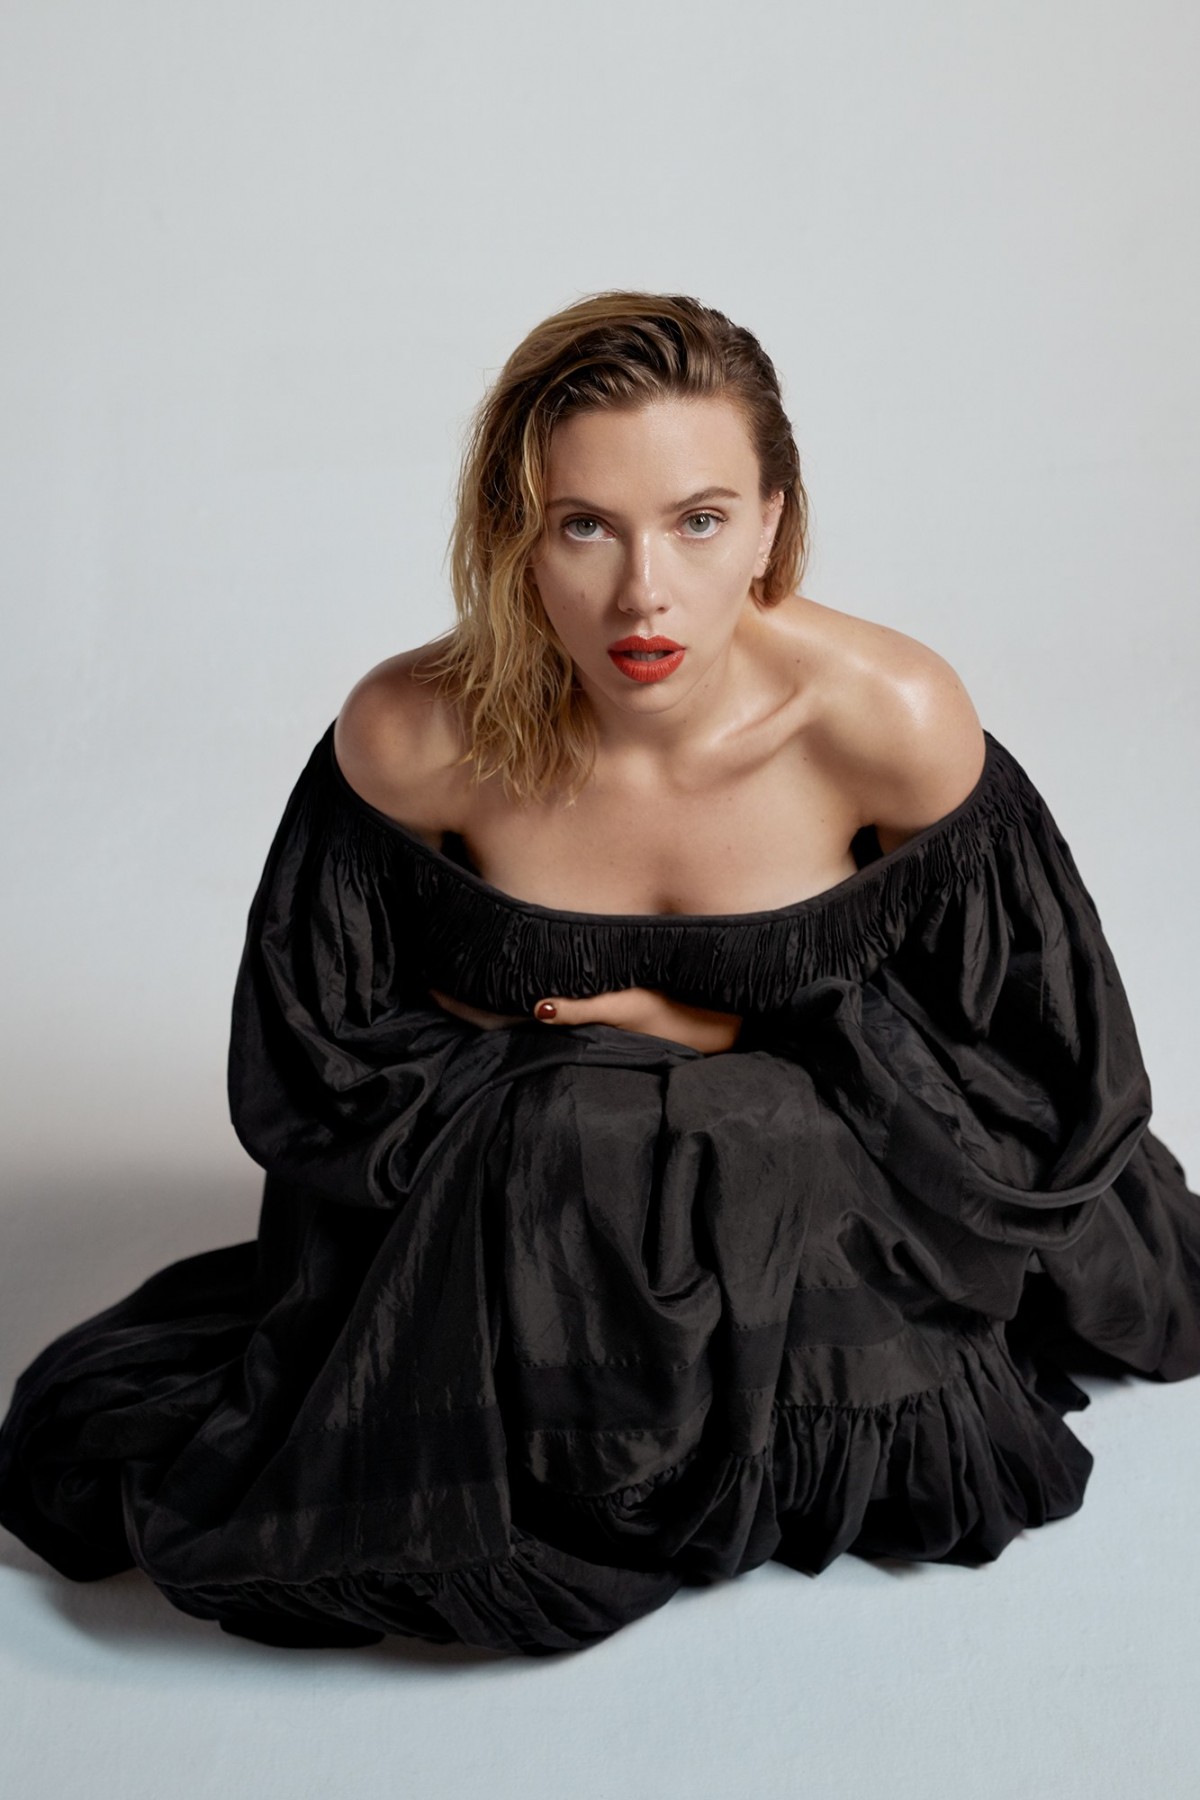 Scarlett Johansson by Collier Schorr for Vanity Fair (2019)